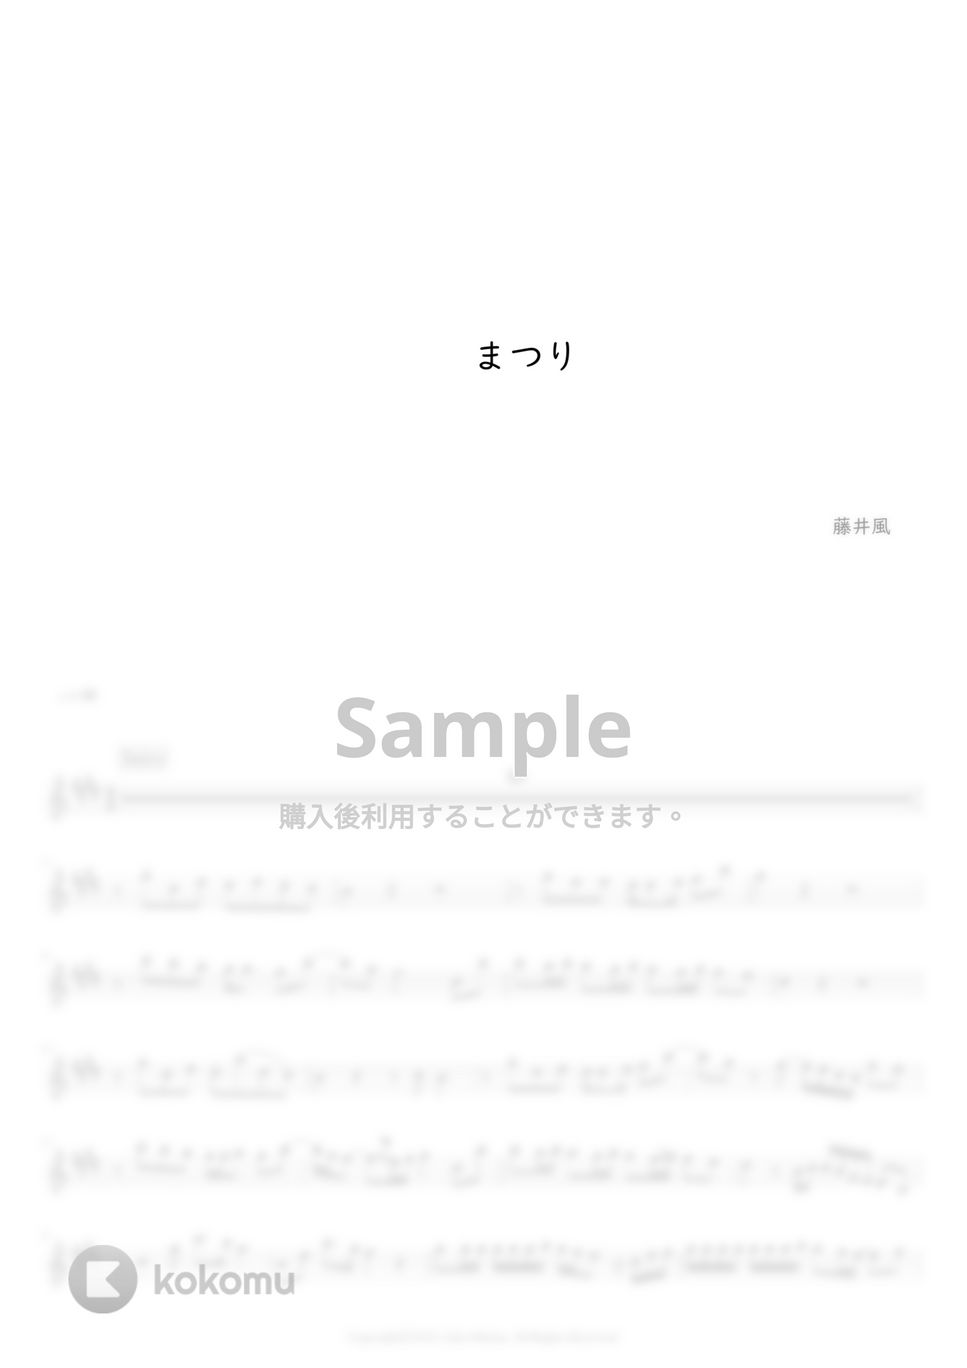 藤井風 - まつり (フルート用メロディー譜) by もりたあいか